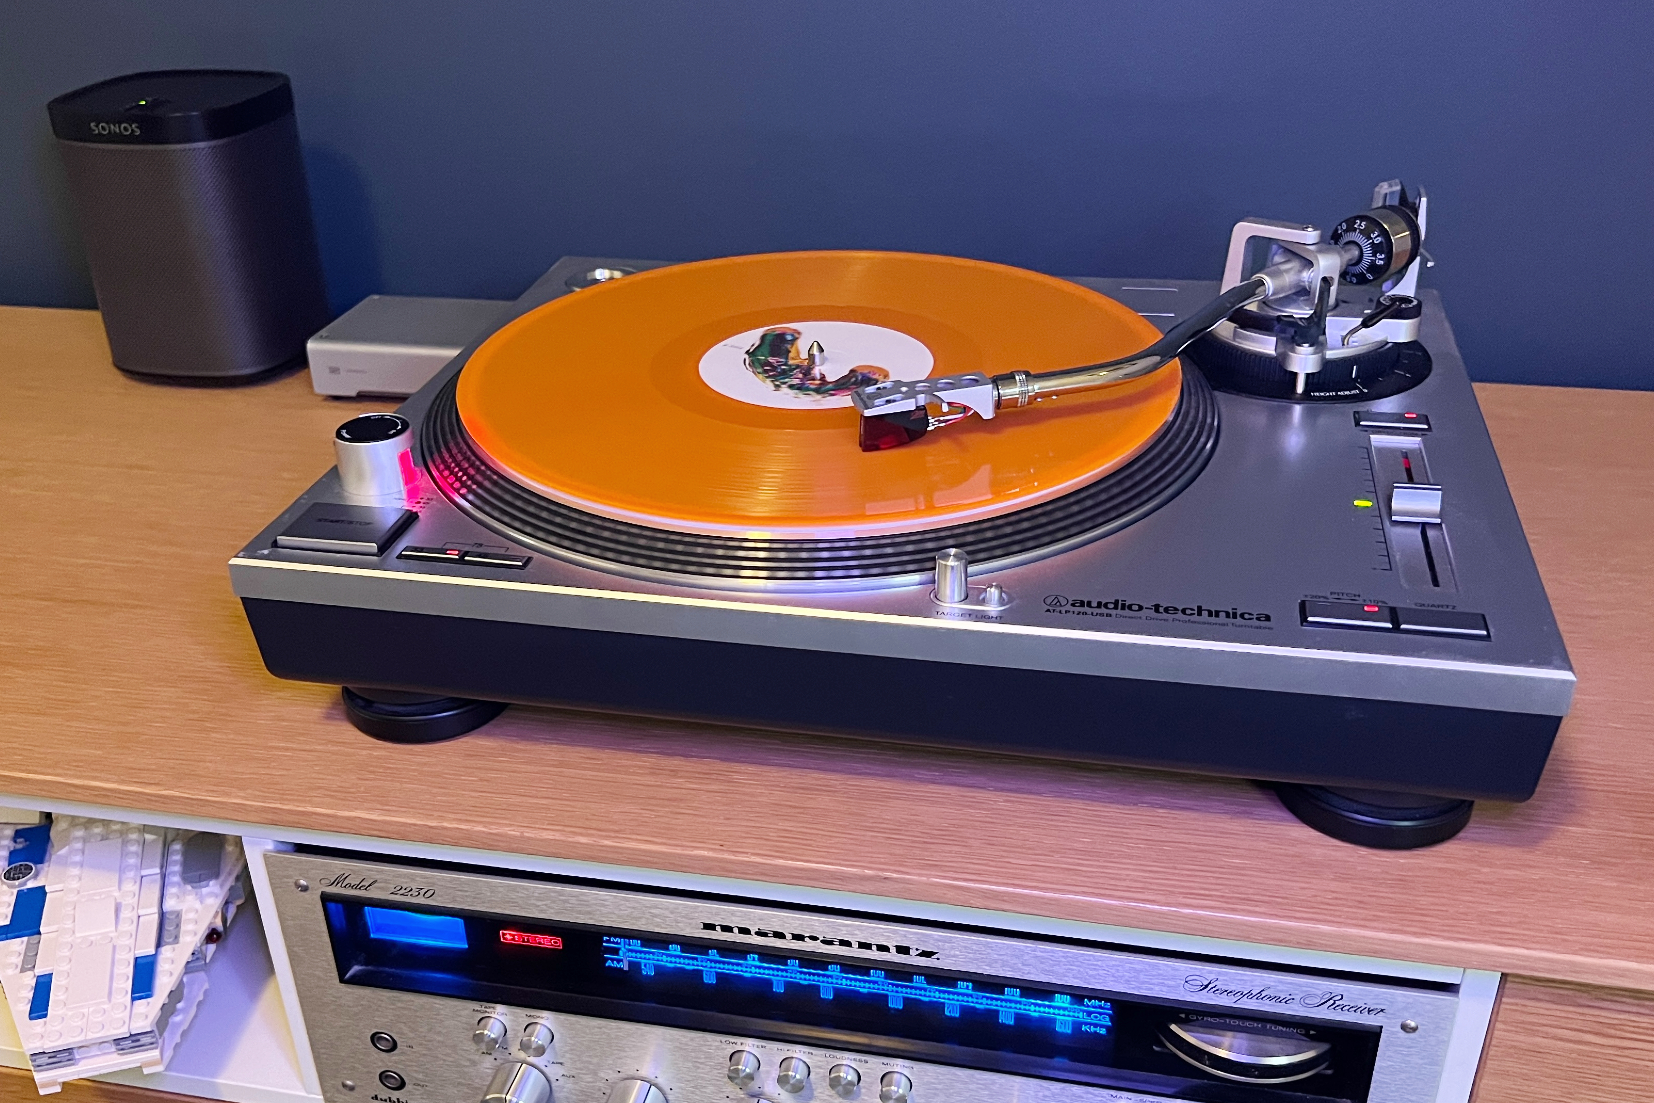 Vinyl Record Accessories – Wax Rax